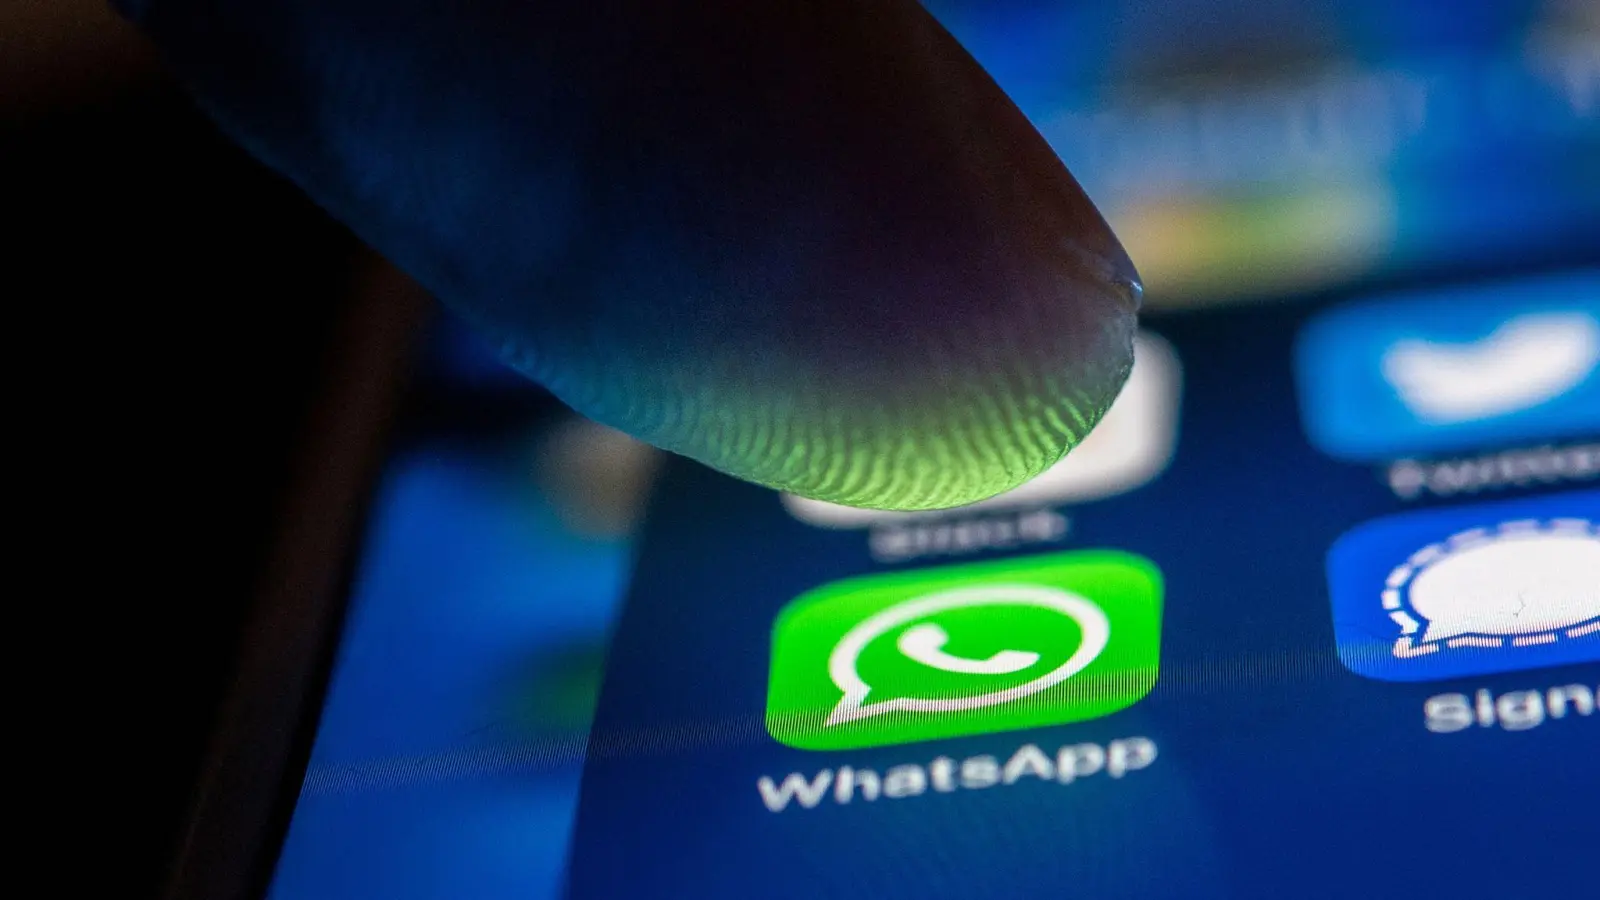 Ein Finger berührt das WhatsApp-Logo auf einem Smartphone. (Foto: Zacharie Scheurer/dpa)